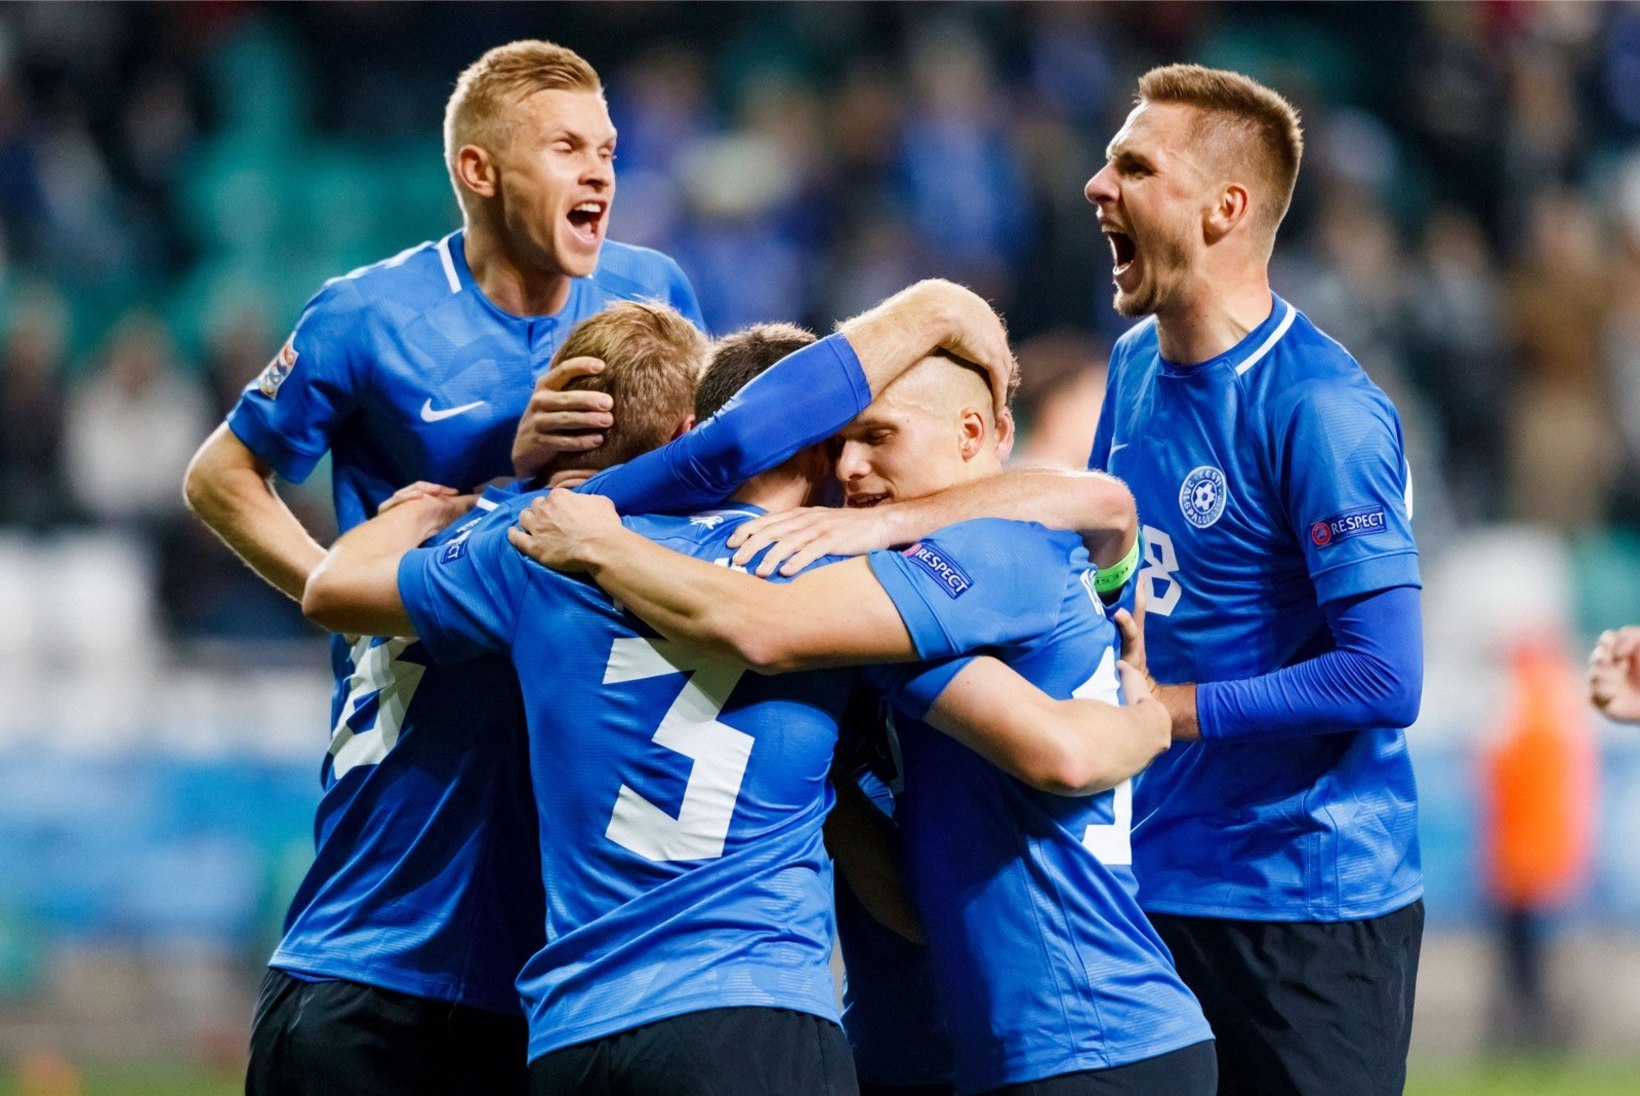 Eesti jalgpallikoondis kohtub EM-valiksarjas Saksamaaga!